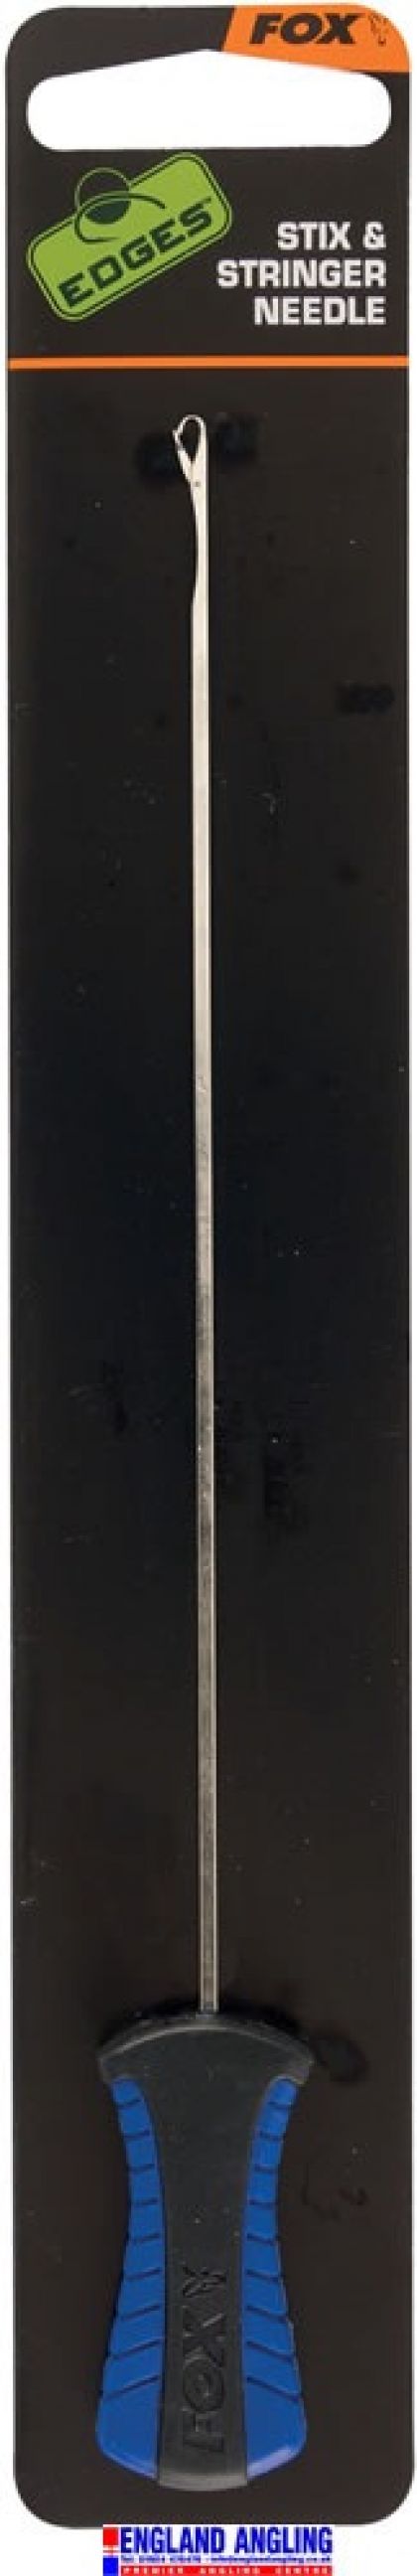 Fox Edges Stix & Stringer Needle blauw - zwart - zilver karper rig accessoire